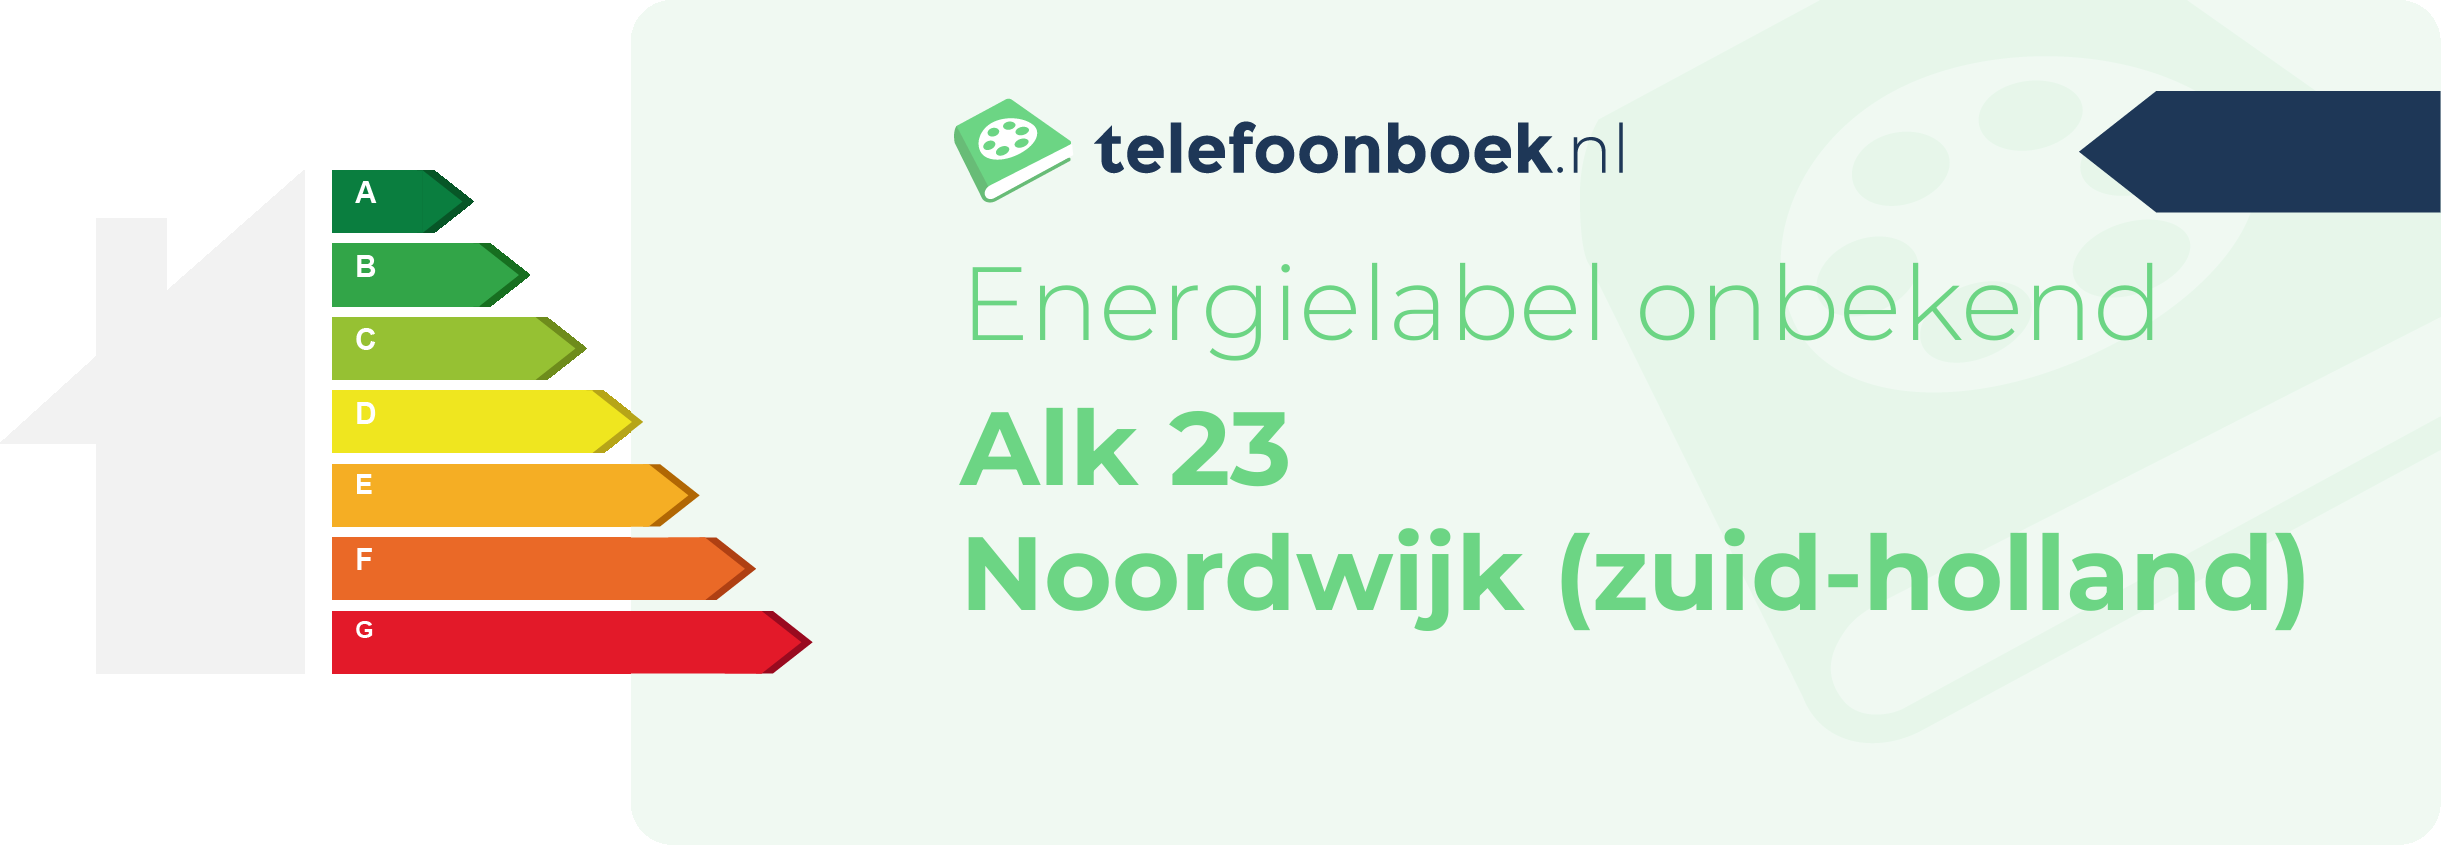 Energielabel Alk 23 Noordwijk (Zuid-Holland)